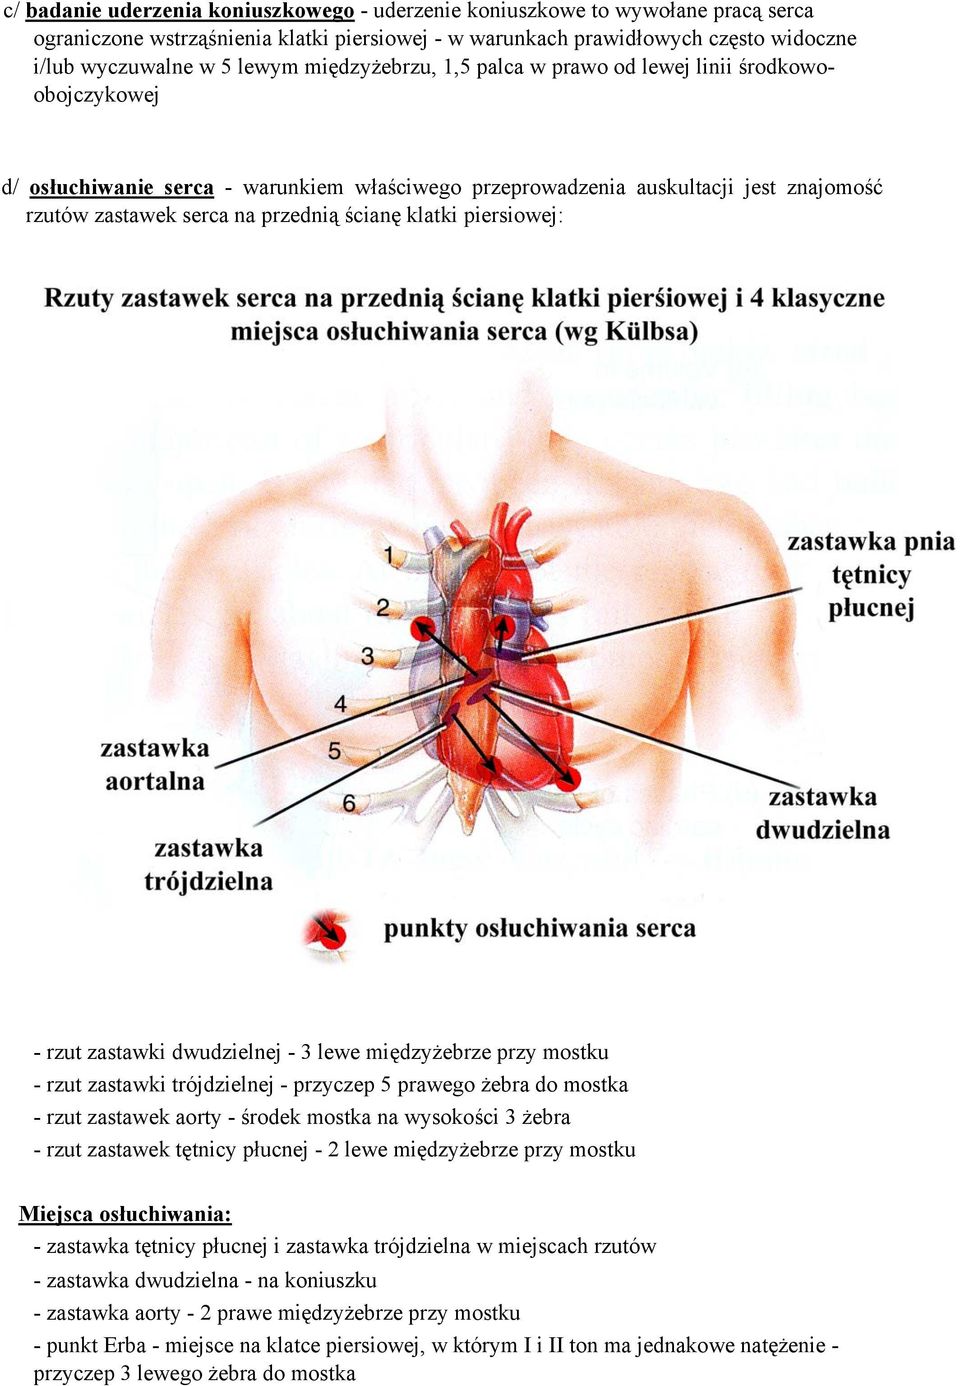 klatki piersiowej: - rzut zastawki dwudzielnej - 3 lewe międzyżebrze przy mostku - rzut zastawki trójdzielnej - przyczep 5 prawego żebra do mostka - rzut zastawek aorty - środek mostka na wysokości 3